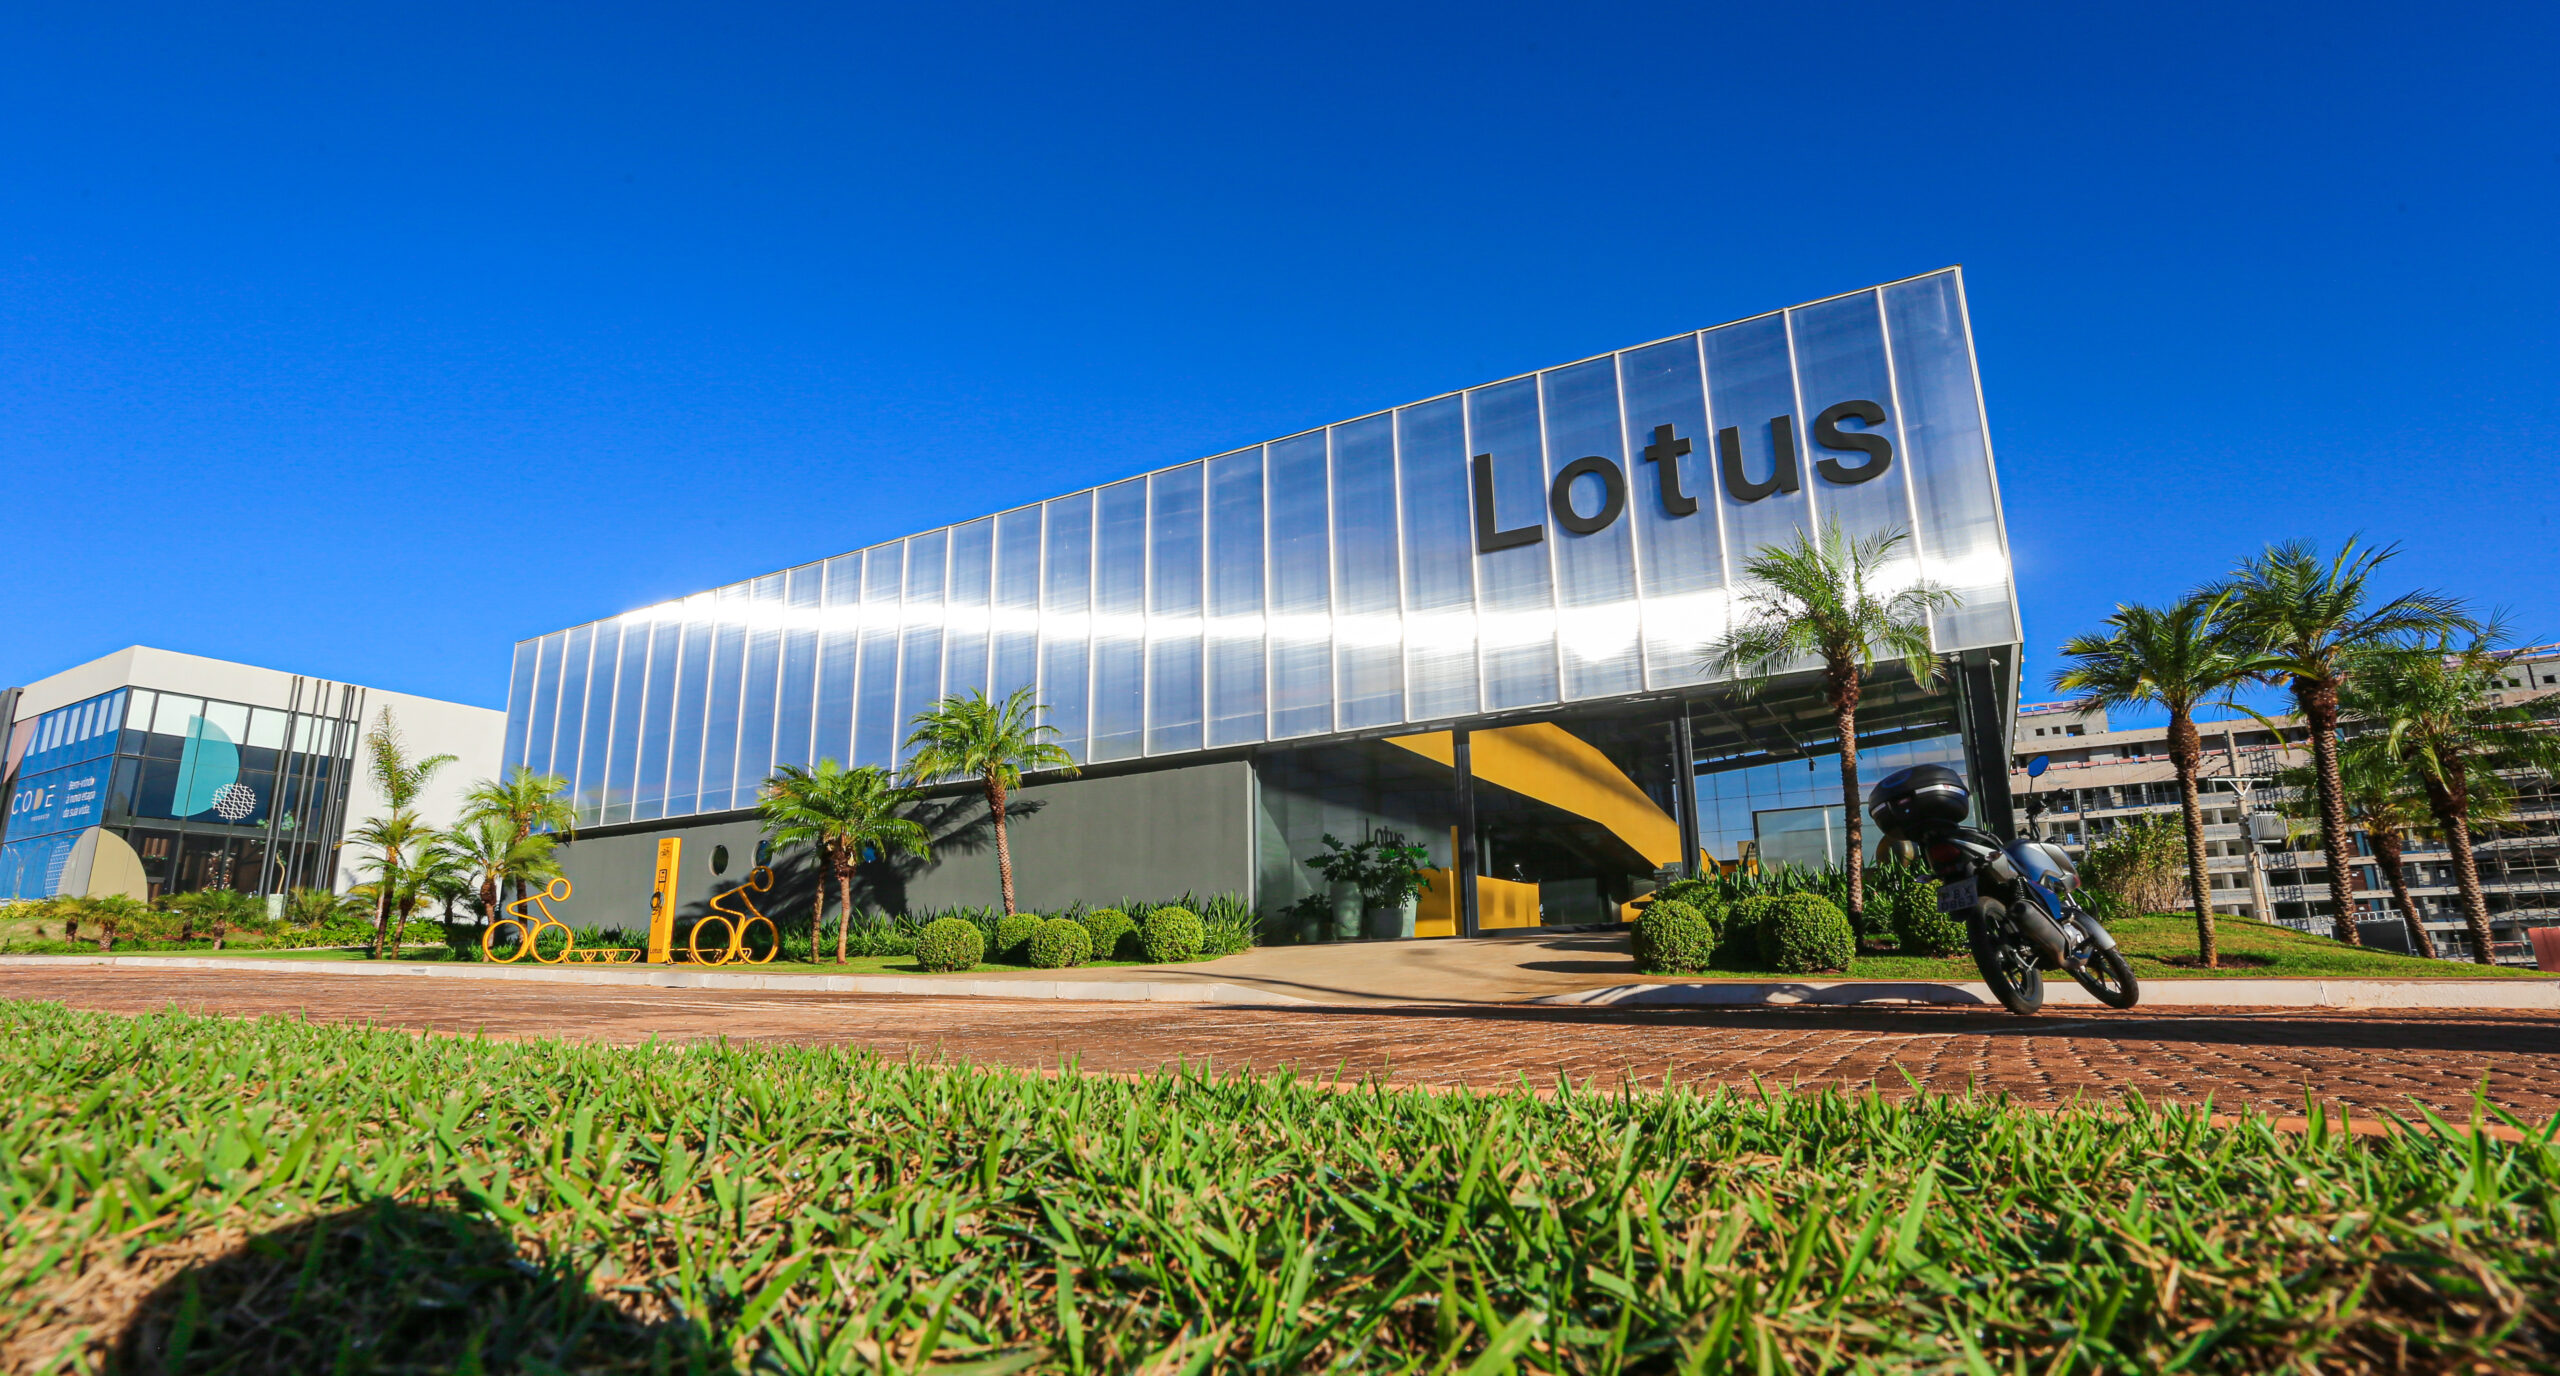 REFERÊNCIA NO MERCADO | Construtora Lotus completa quatro anos de atuação em Brasília